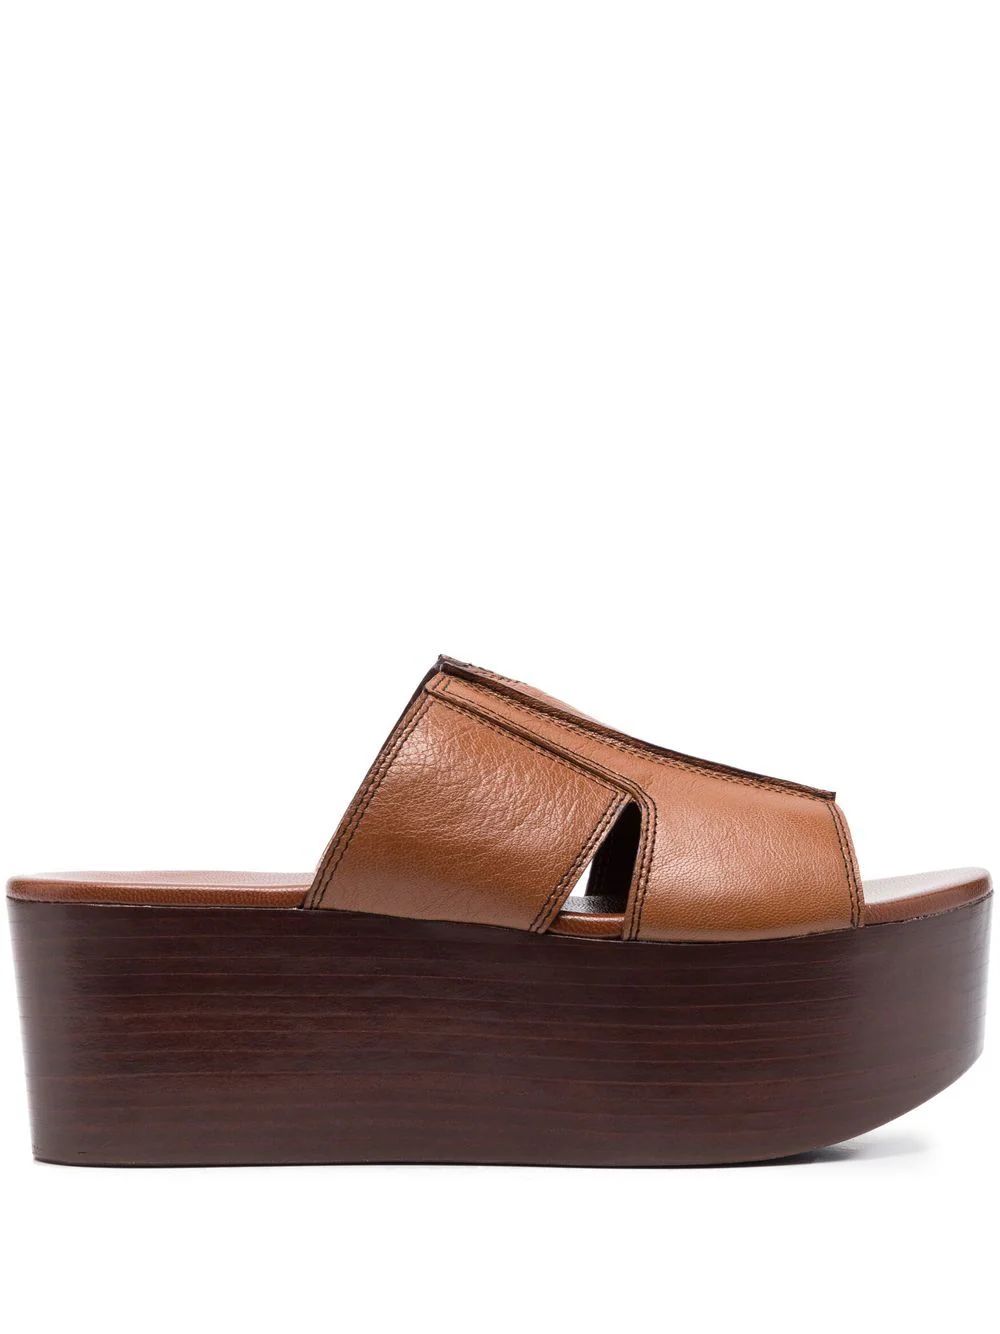 See By Chloé Leather 60mm Platform Sandals - Farfetch | Farfetch Global